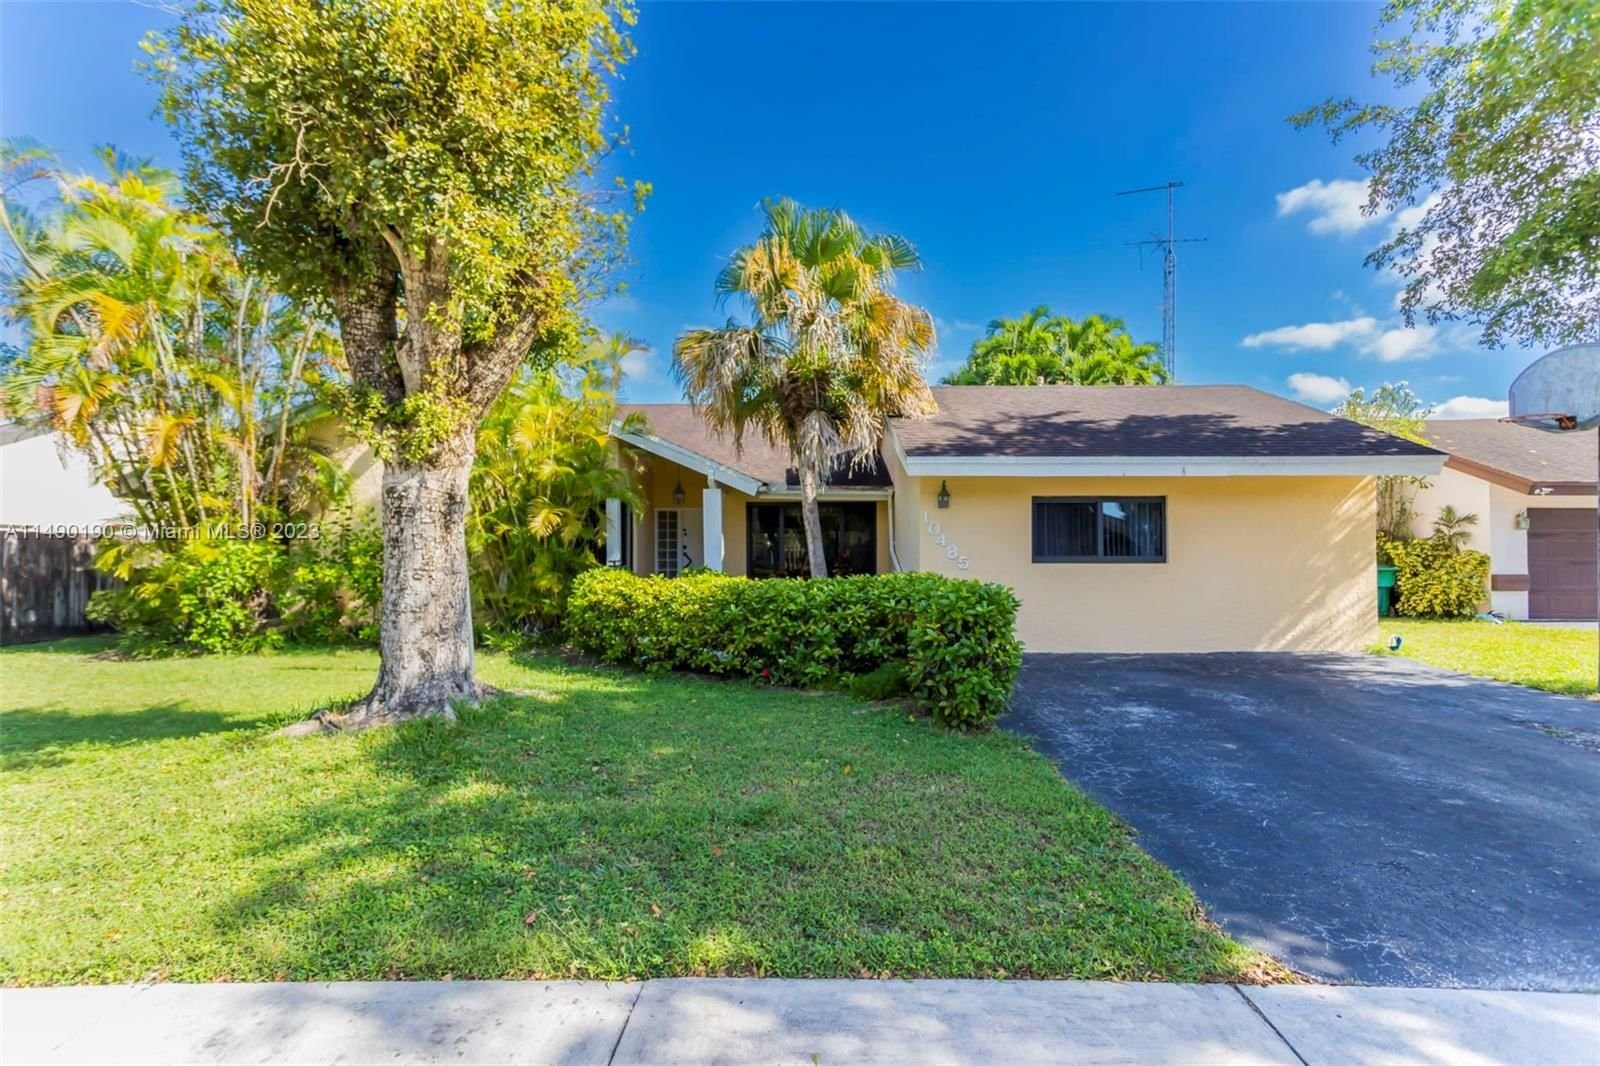 Real estate property located at 10485 130th Ct, Miami-Dade County, CALUSA CORNERS, Miami, FL